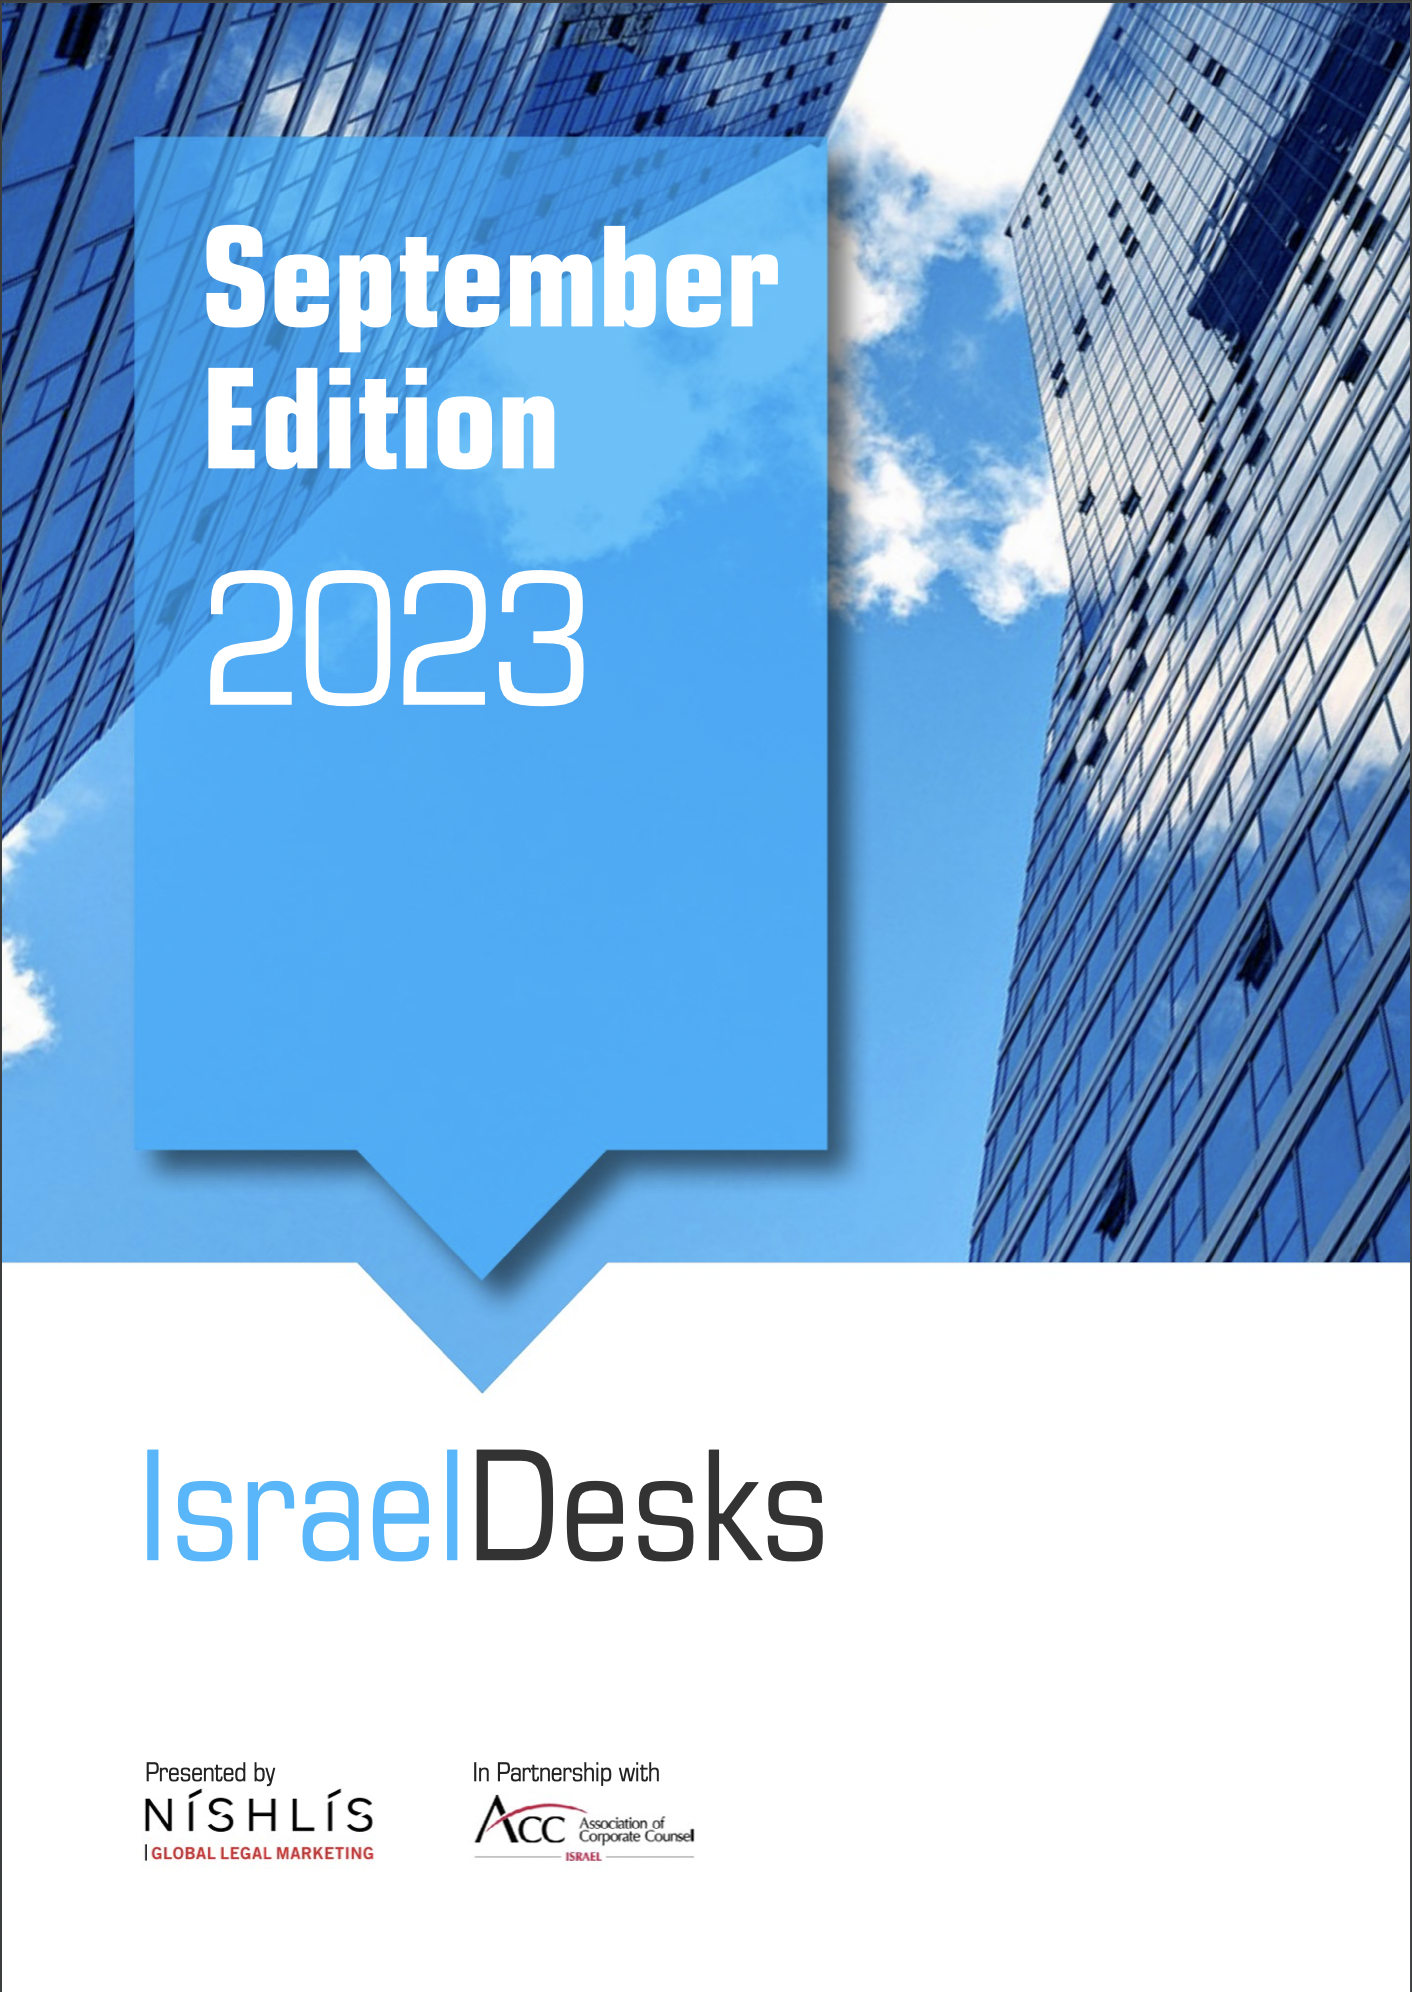 IsraelDesks Magazine September 2023 Edition